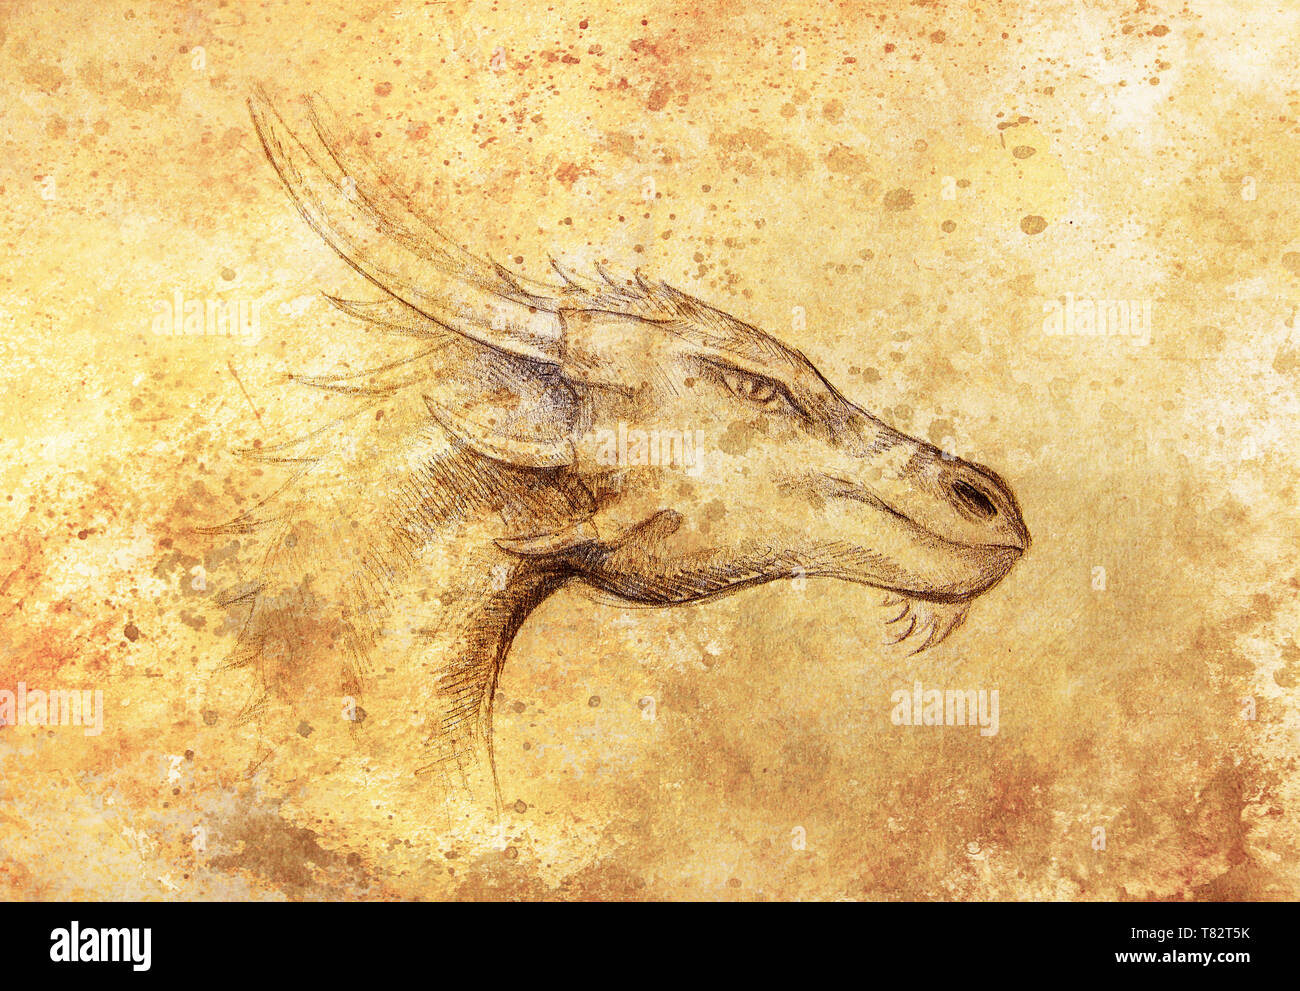 Dessin de tête de dragon sur le papier. Portrait de profil Banque D'Images